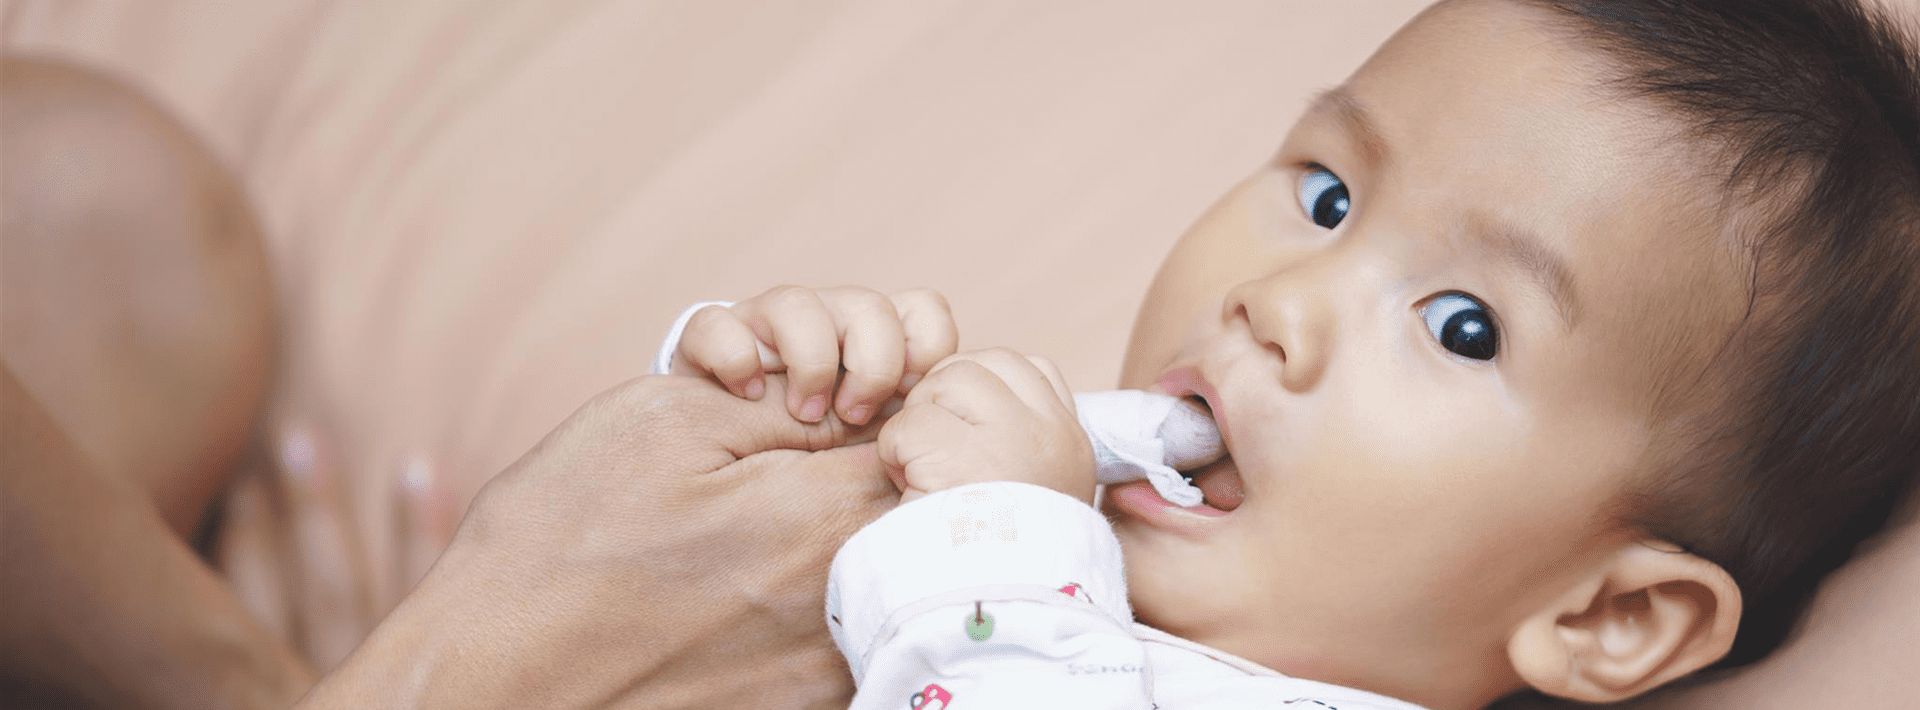 วิธีการดูแลสุขภาพช่องปากลูกน้อยตั้งแต่แรกเกิด